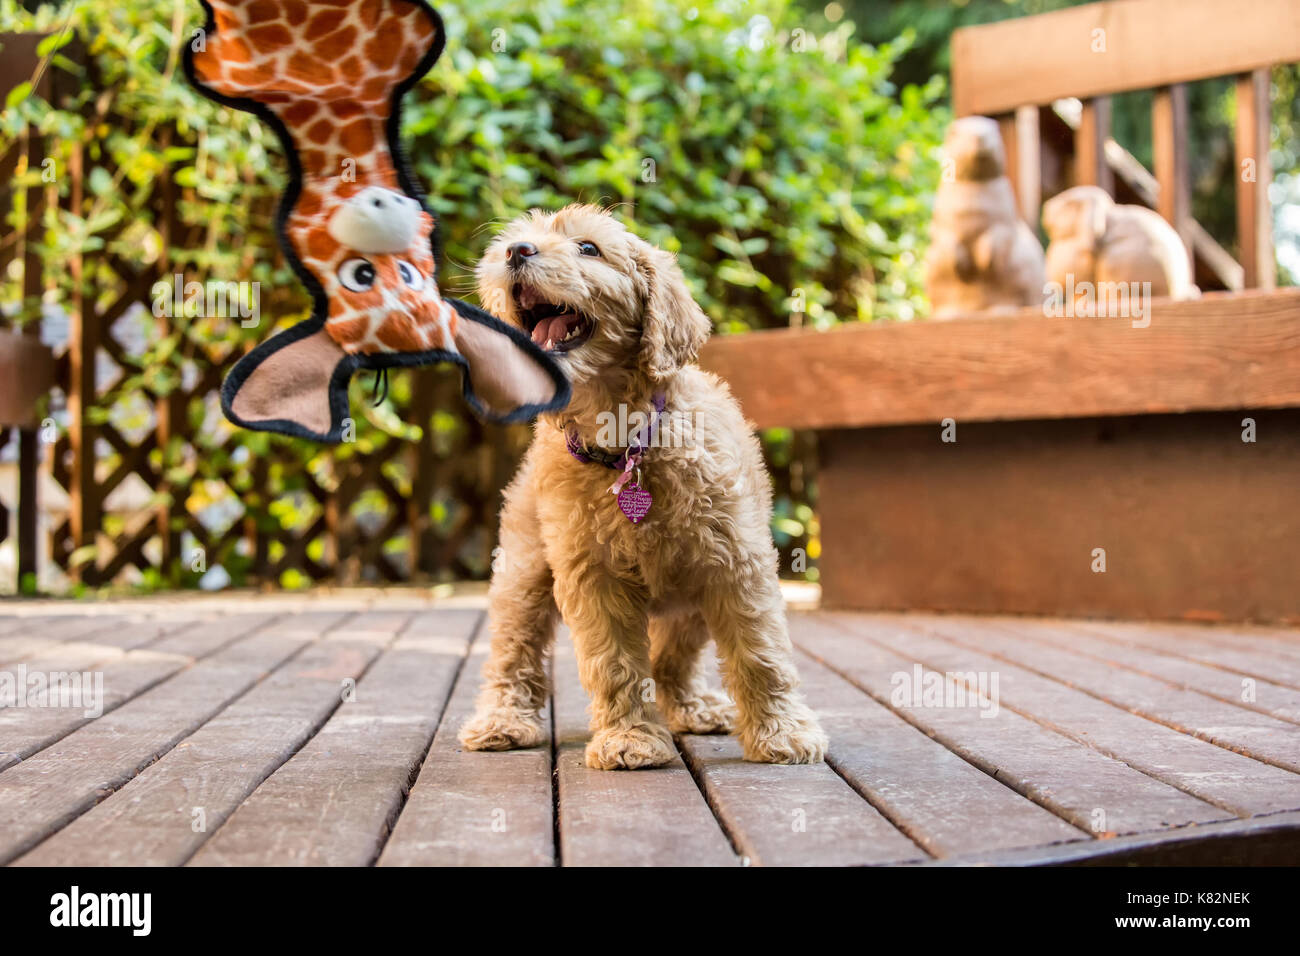 Huit semaine Goldendoodle puppy 'Bella' essaie d'obtenir son jouet girafe qui est fait miroiter devant elle, à Issaquah, Washington, USA Banque D'Images